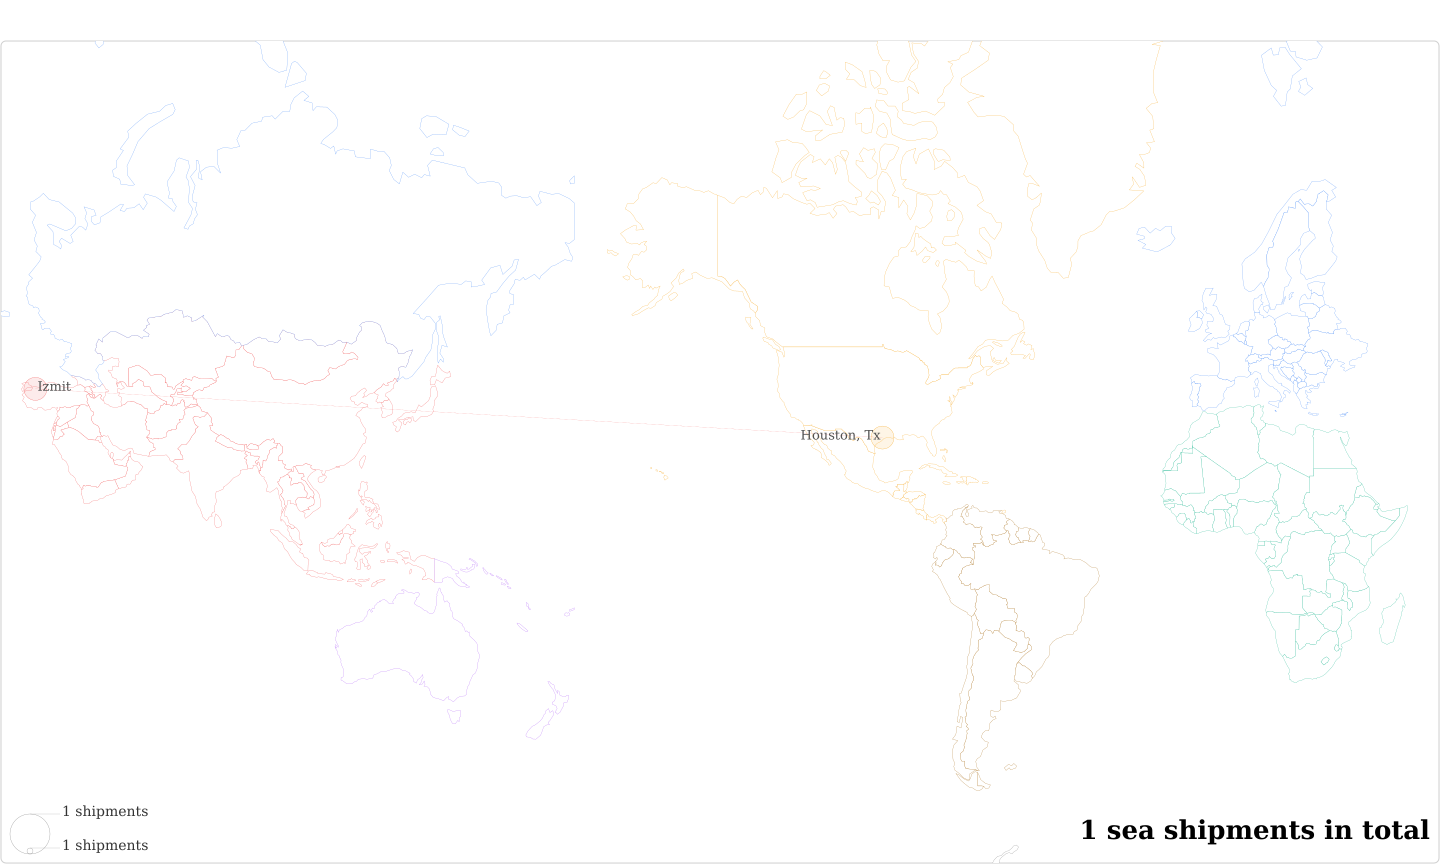 Goldens Sofa Alim Yerlikaya Cerrah Mah's Imports Per Country Map